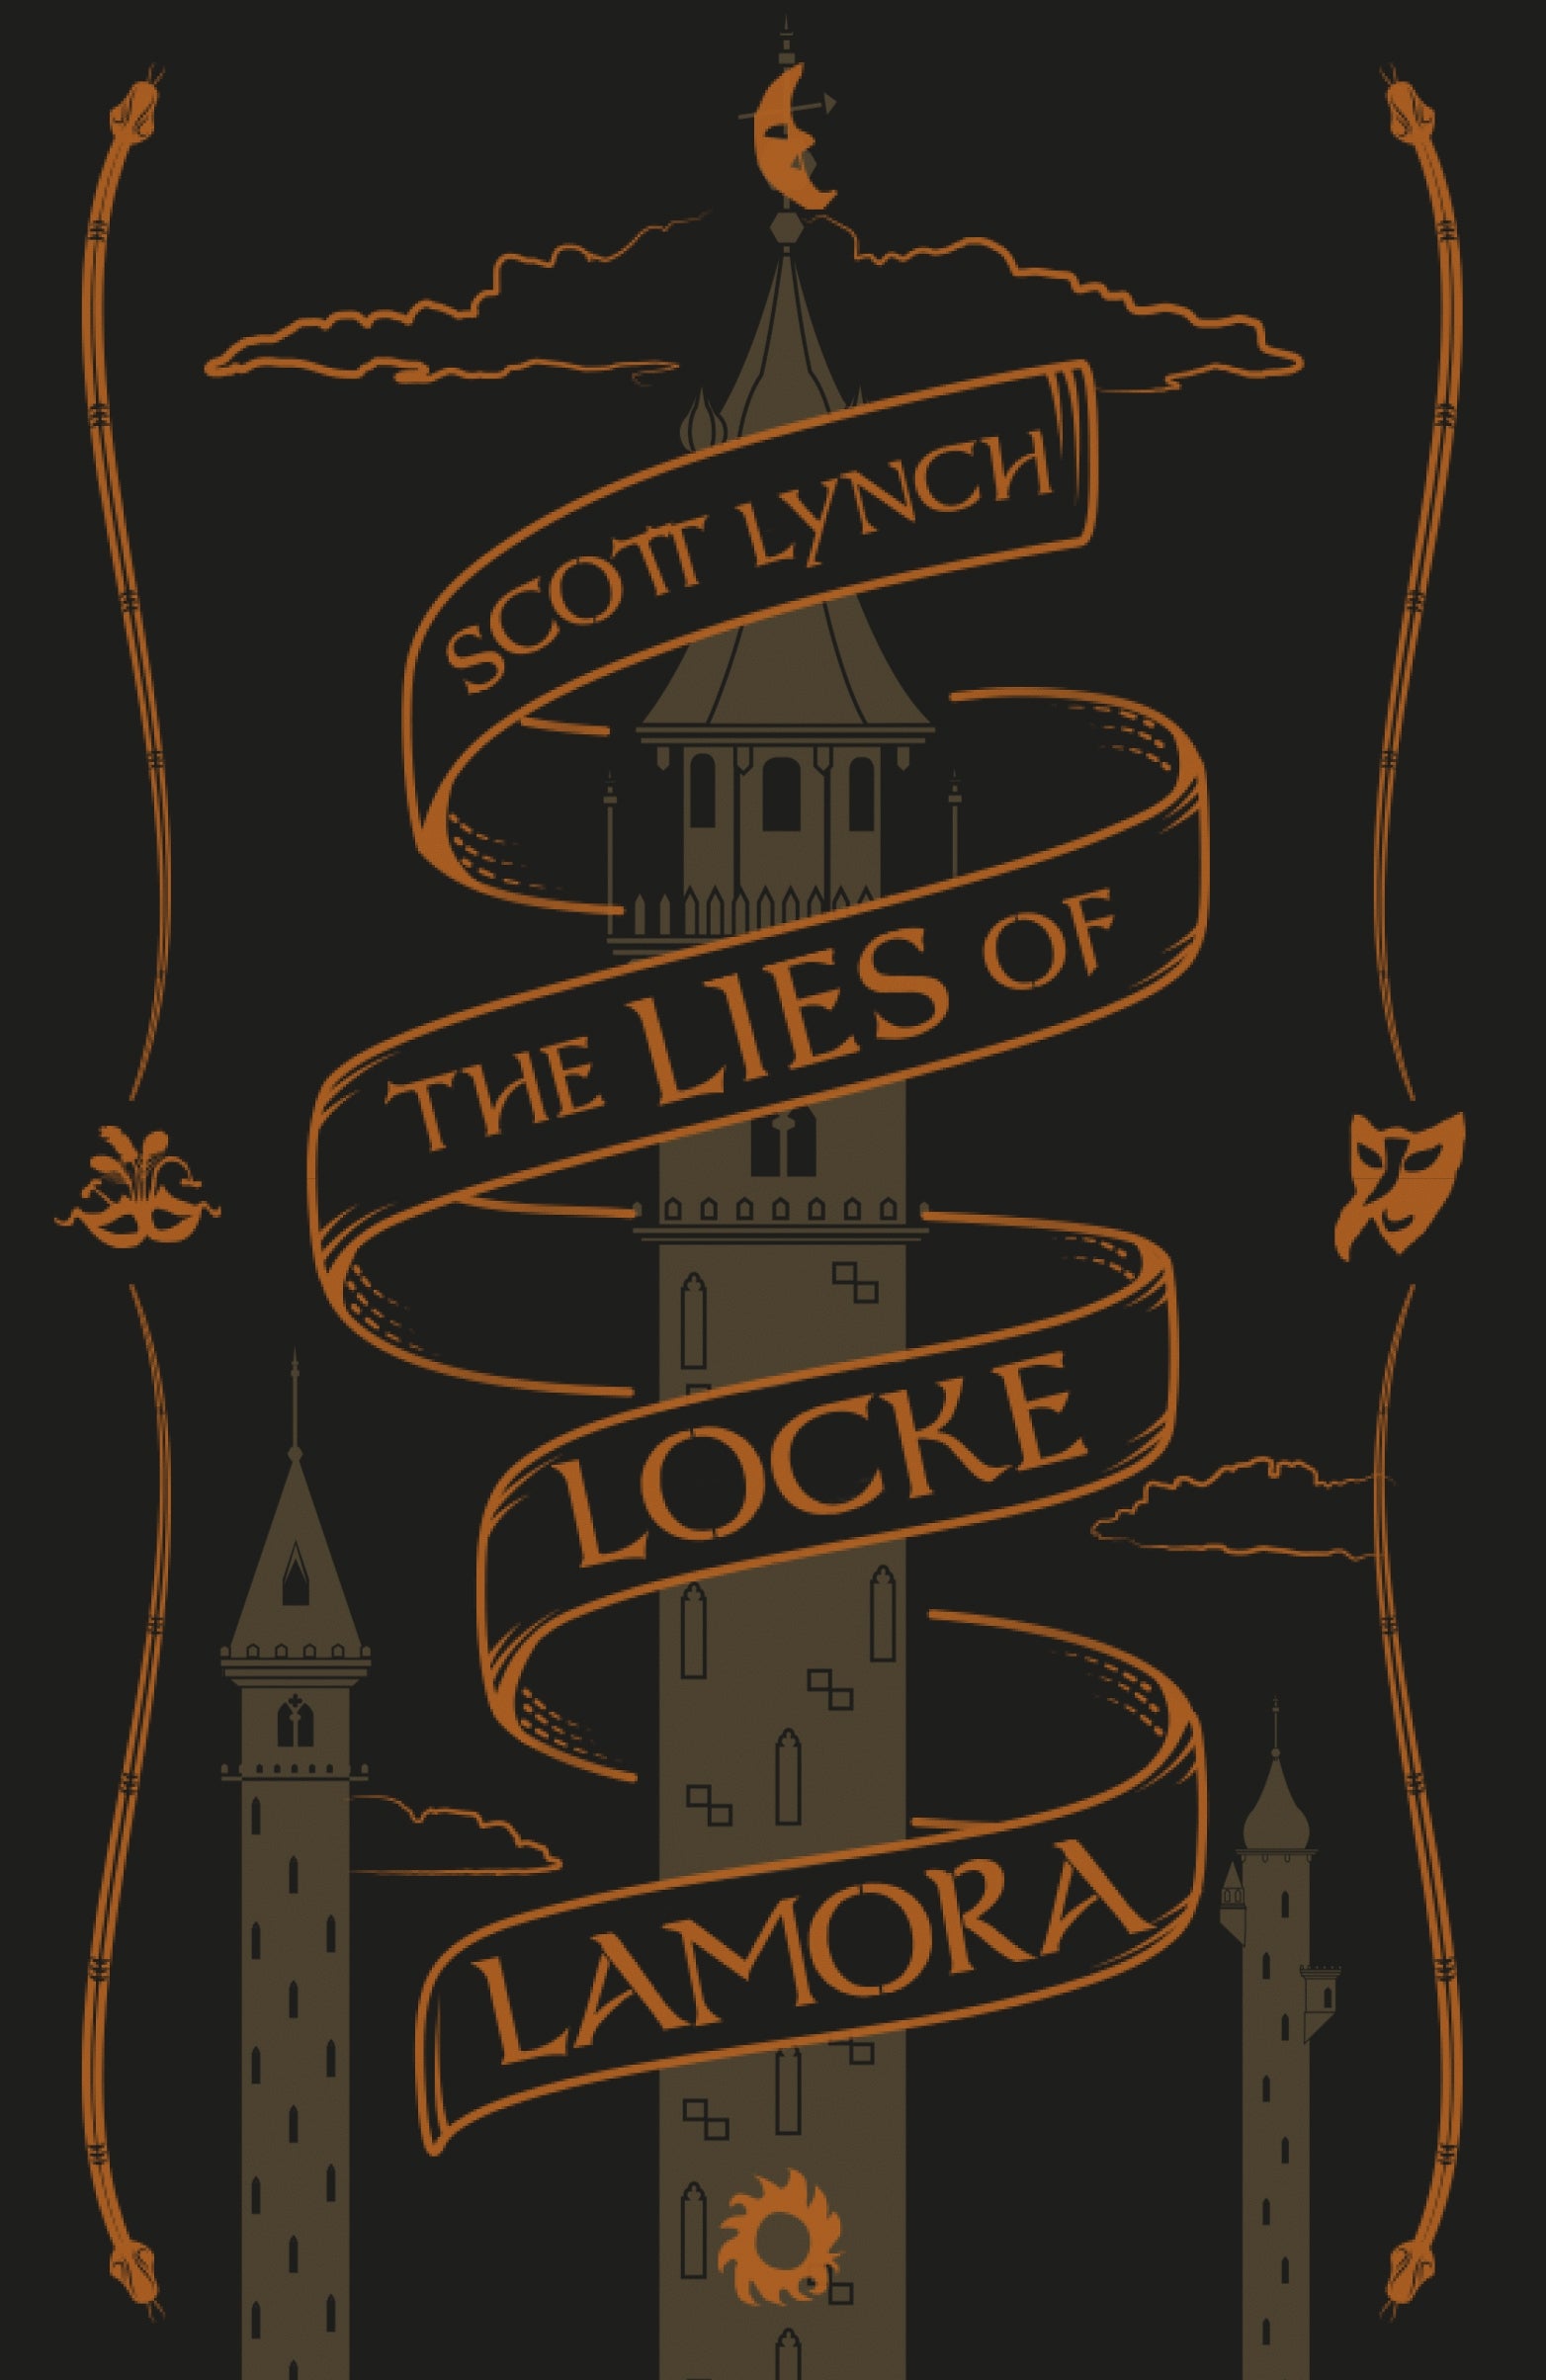 The Lies of Locke Lamora by Scott Lynch